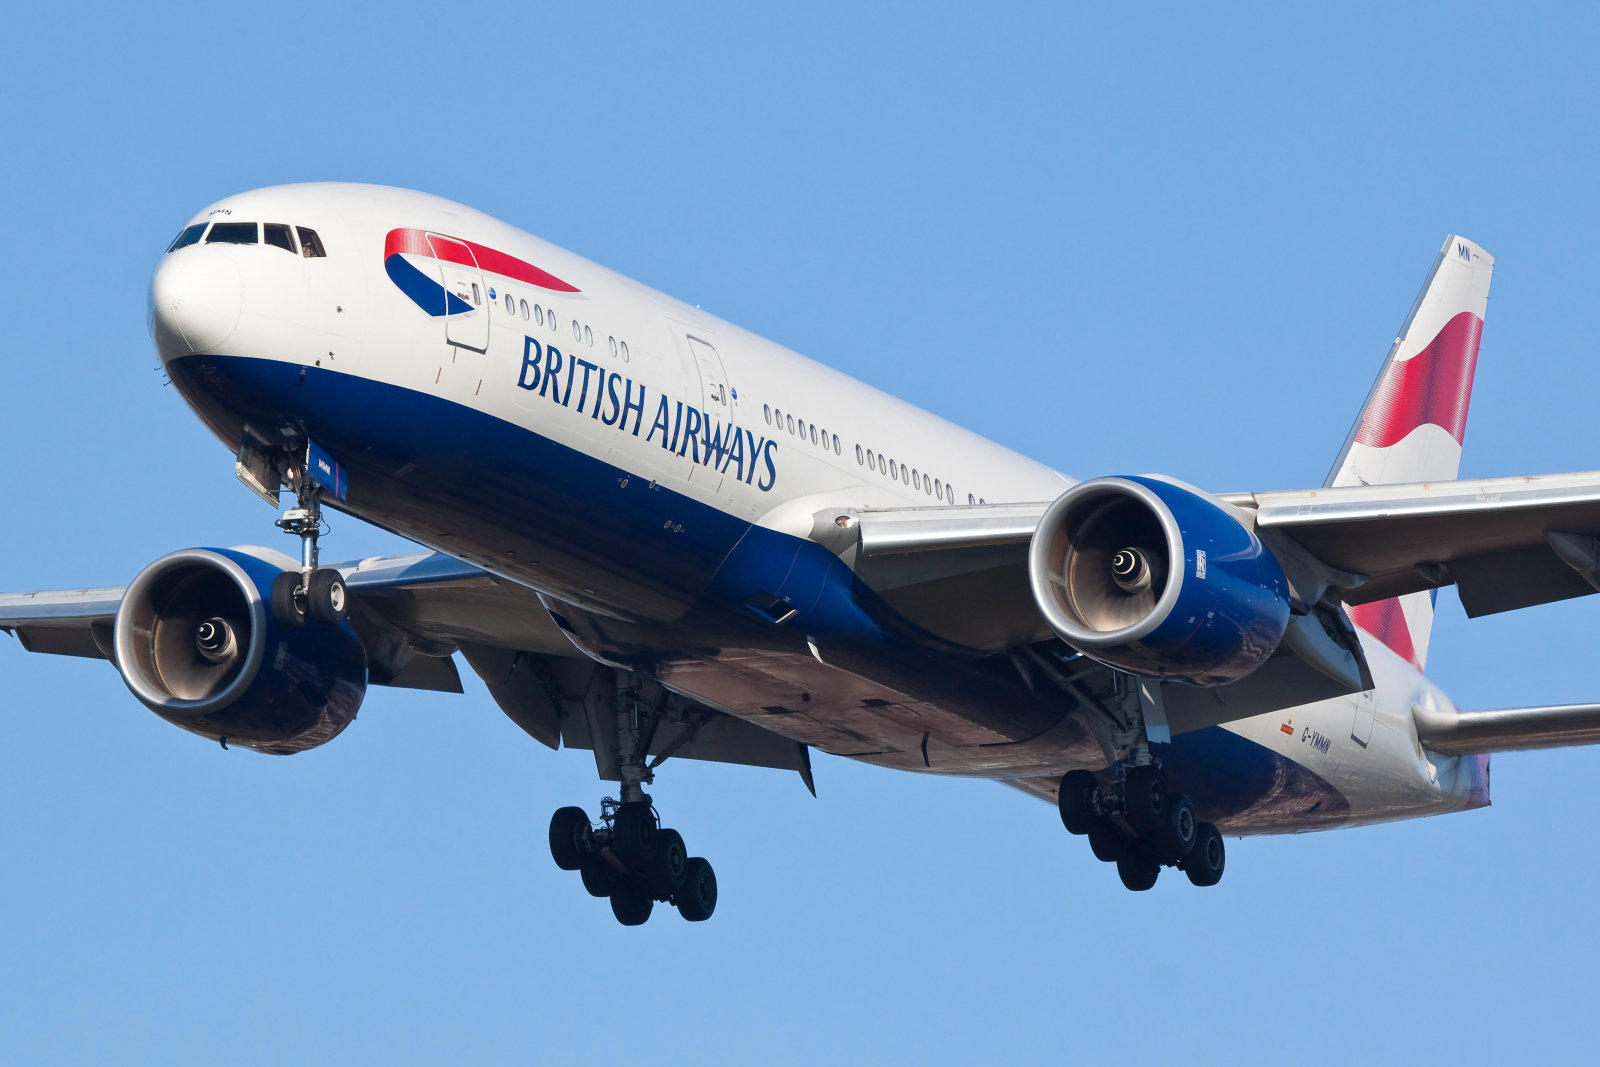 Из-за «сбоя компьютерной системы» в выходные было отменено множество рейсов авиакомпании British Airways